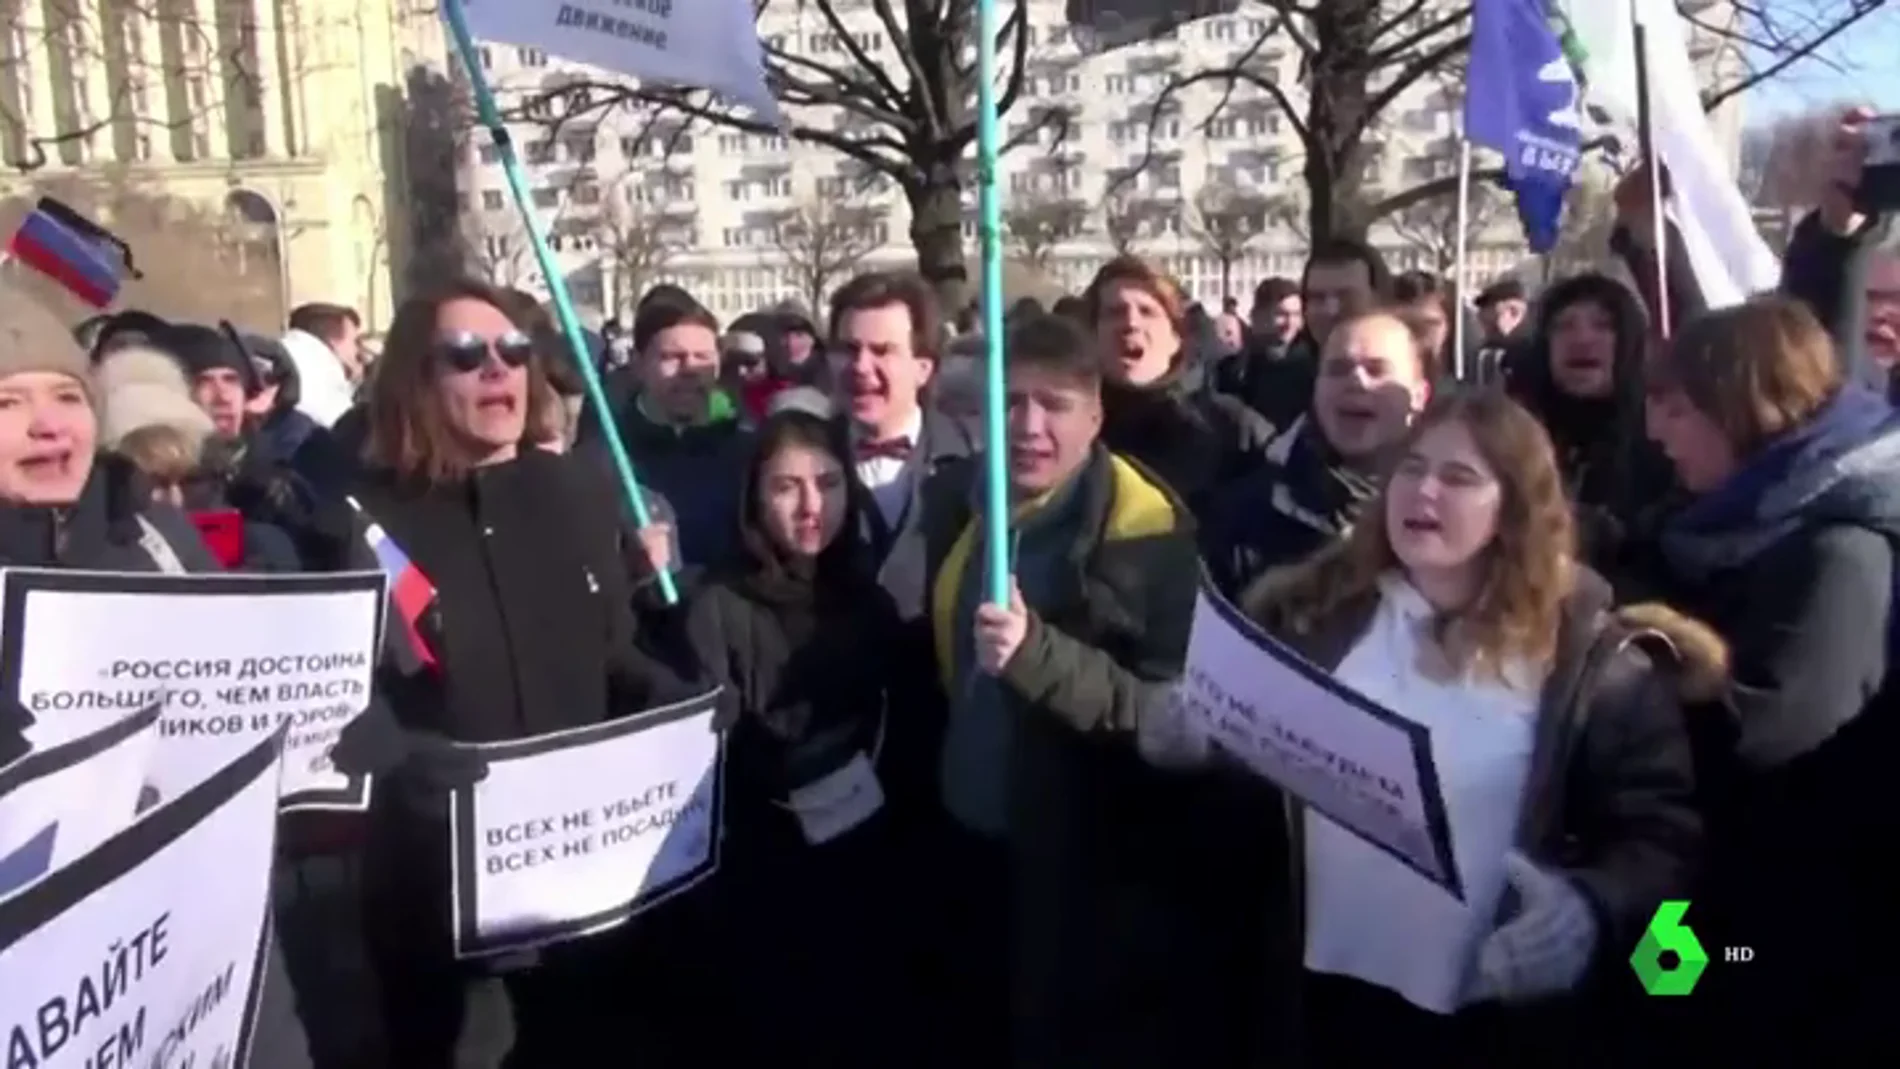 Miles de personas se manifiestan en Rusia contra las reformas constitucionales anunciadas por Putin para reforzar su poder